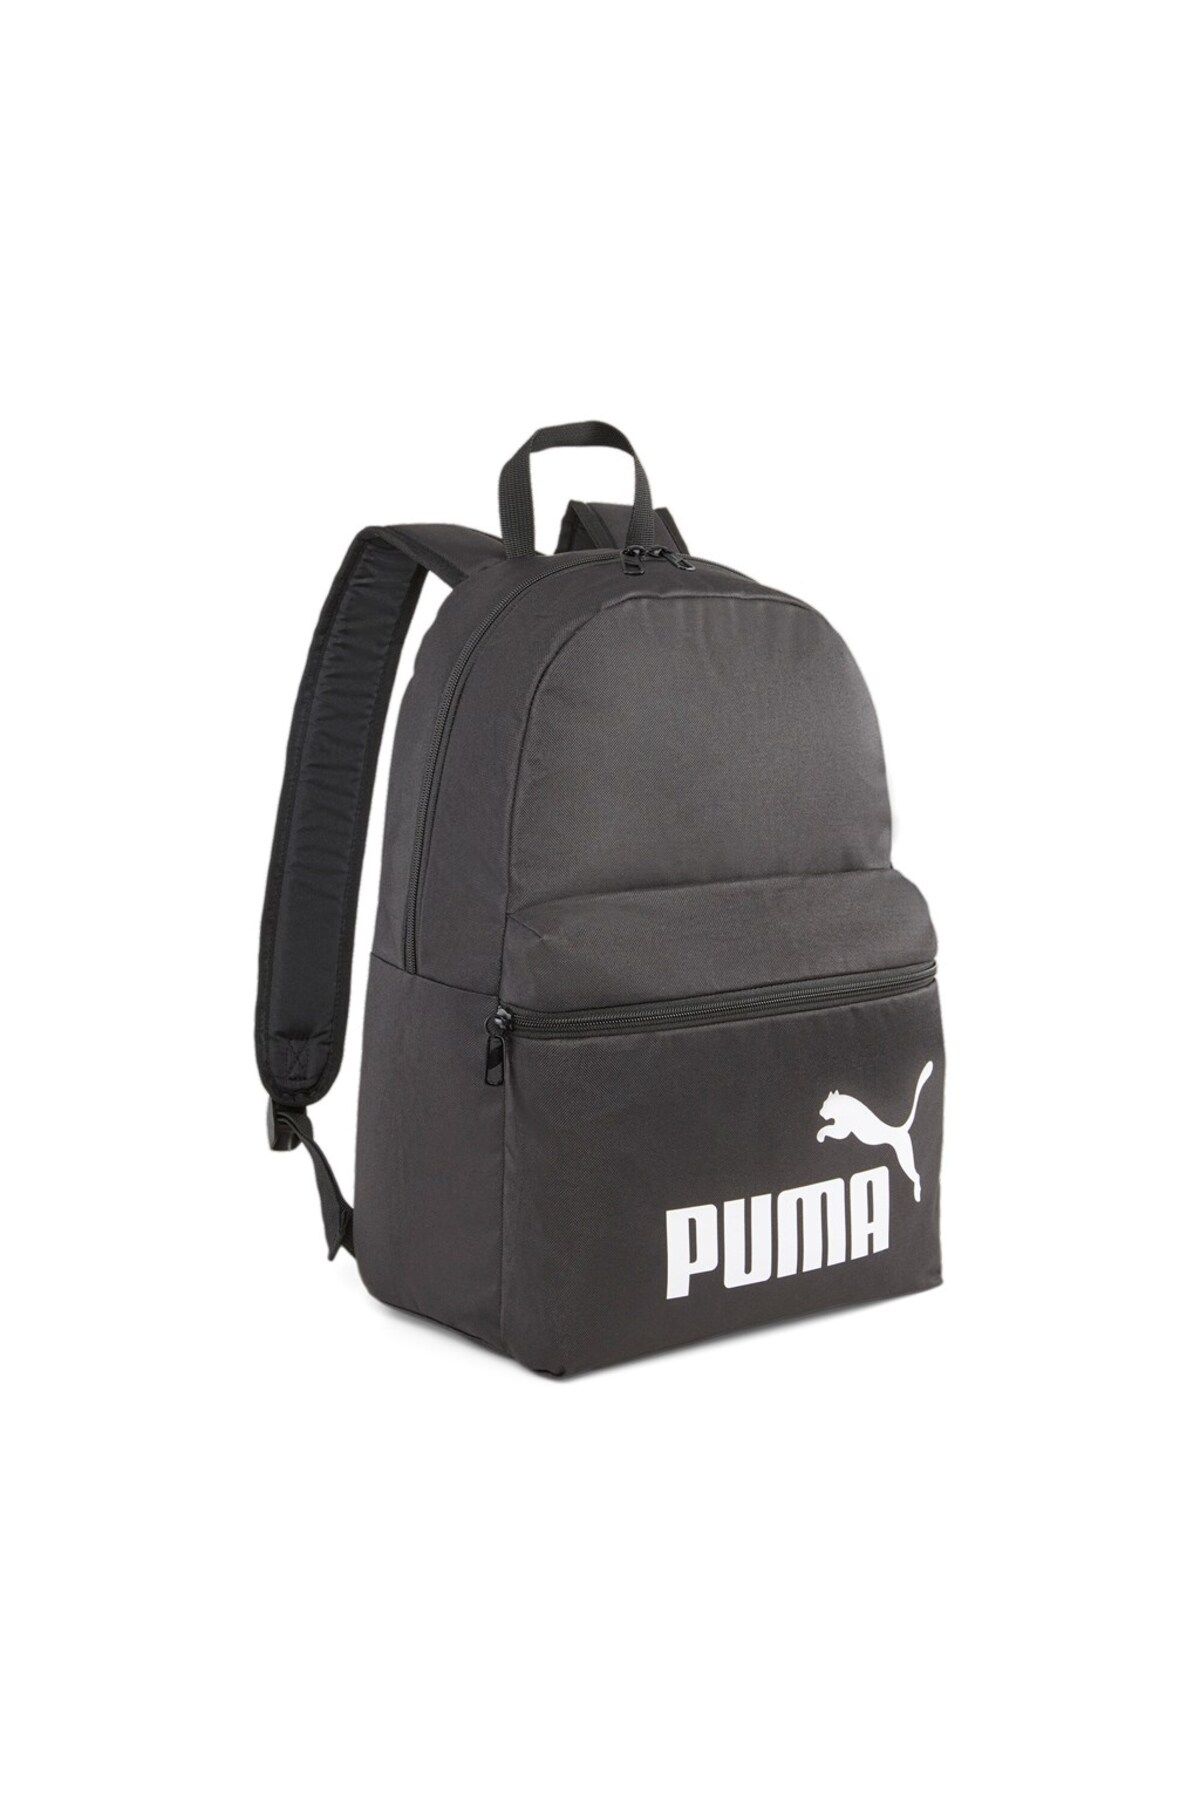 Puma Sırt Çantası Phase Backpack 07994301